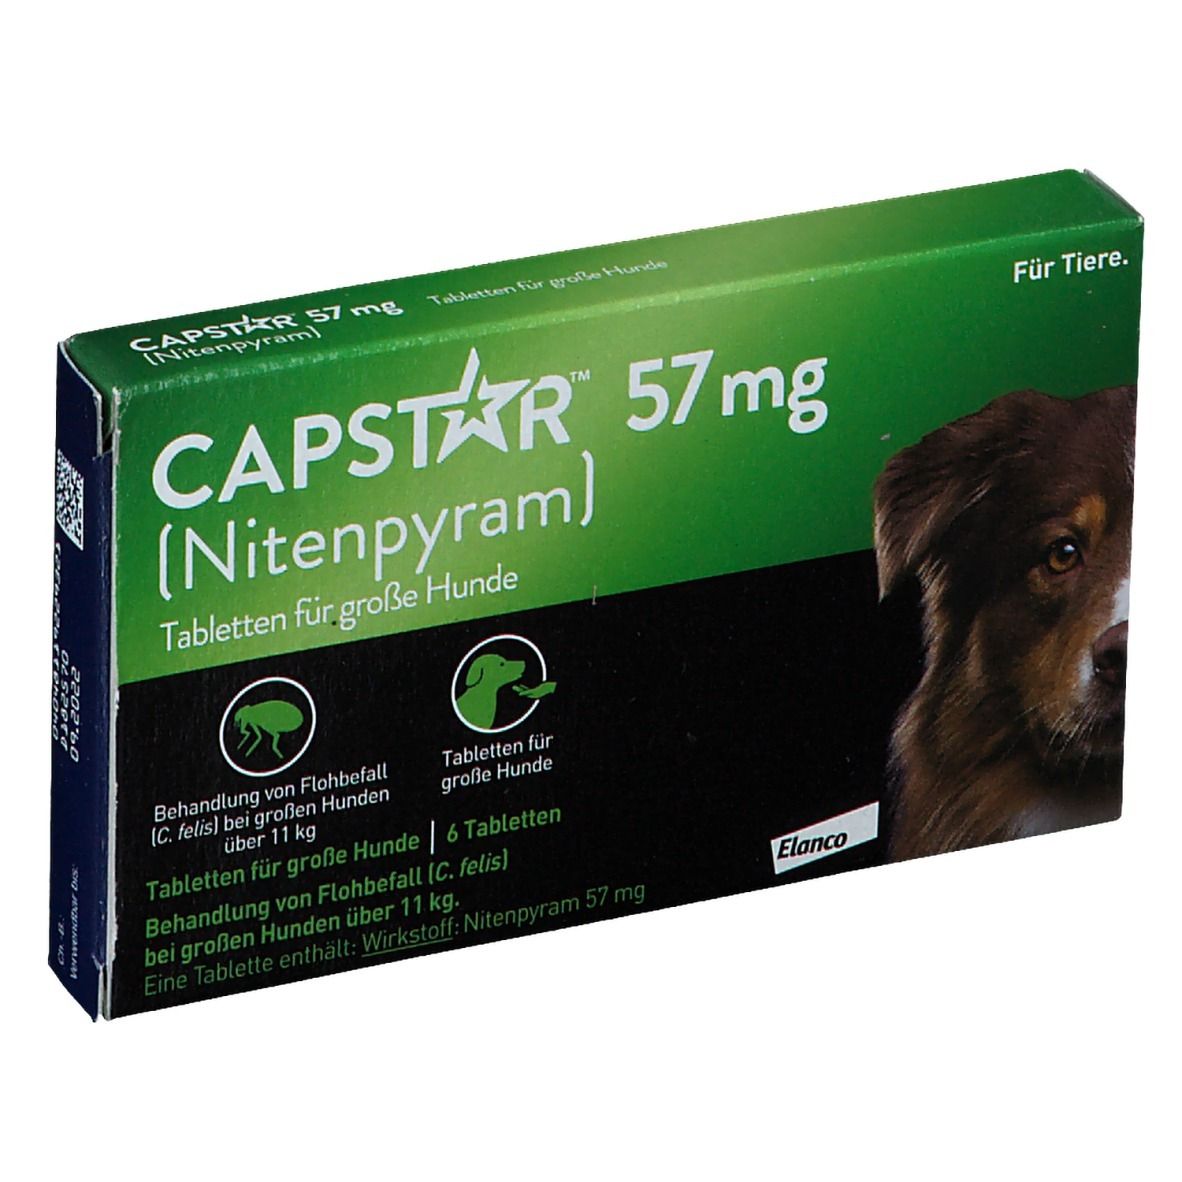 Capstar® 57 mg gegen Flohbefall bei großen Hunden